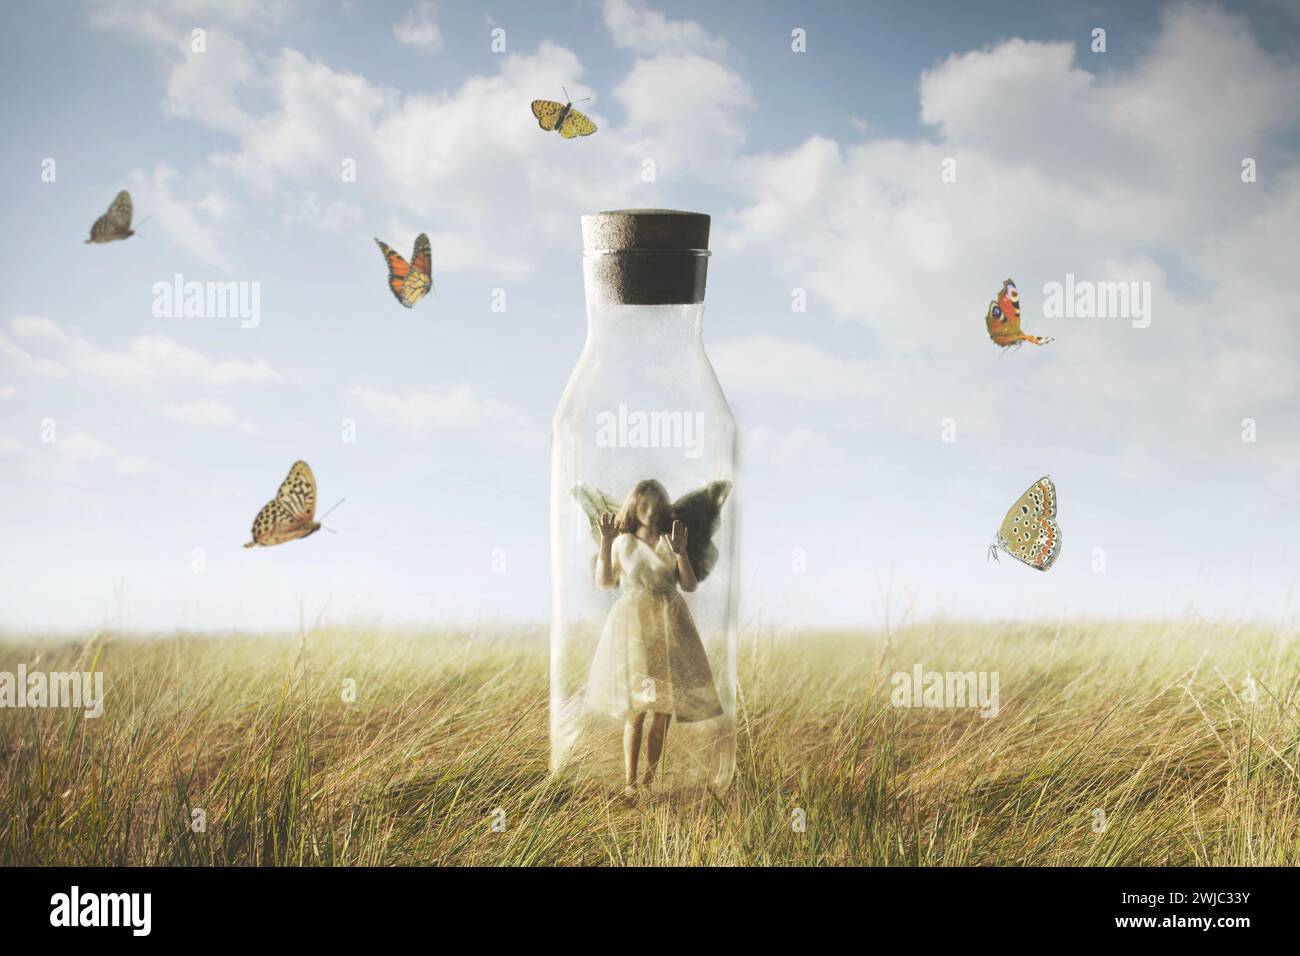 la femme papillon surréaliste regardant la liberté enfermée dans une bouteille, concept abstrait Banque D'Images